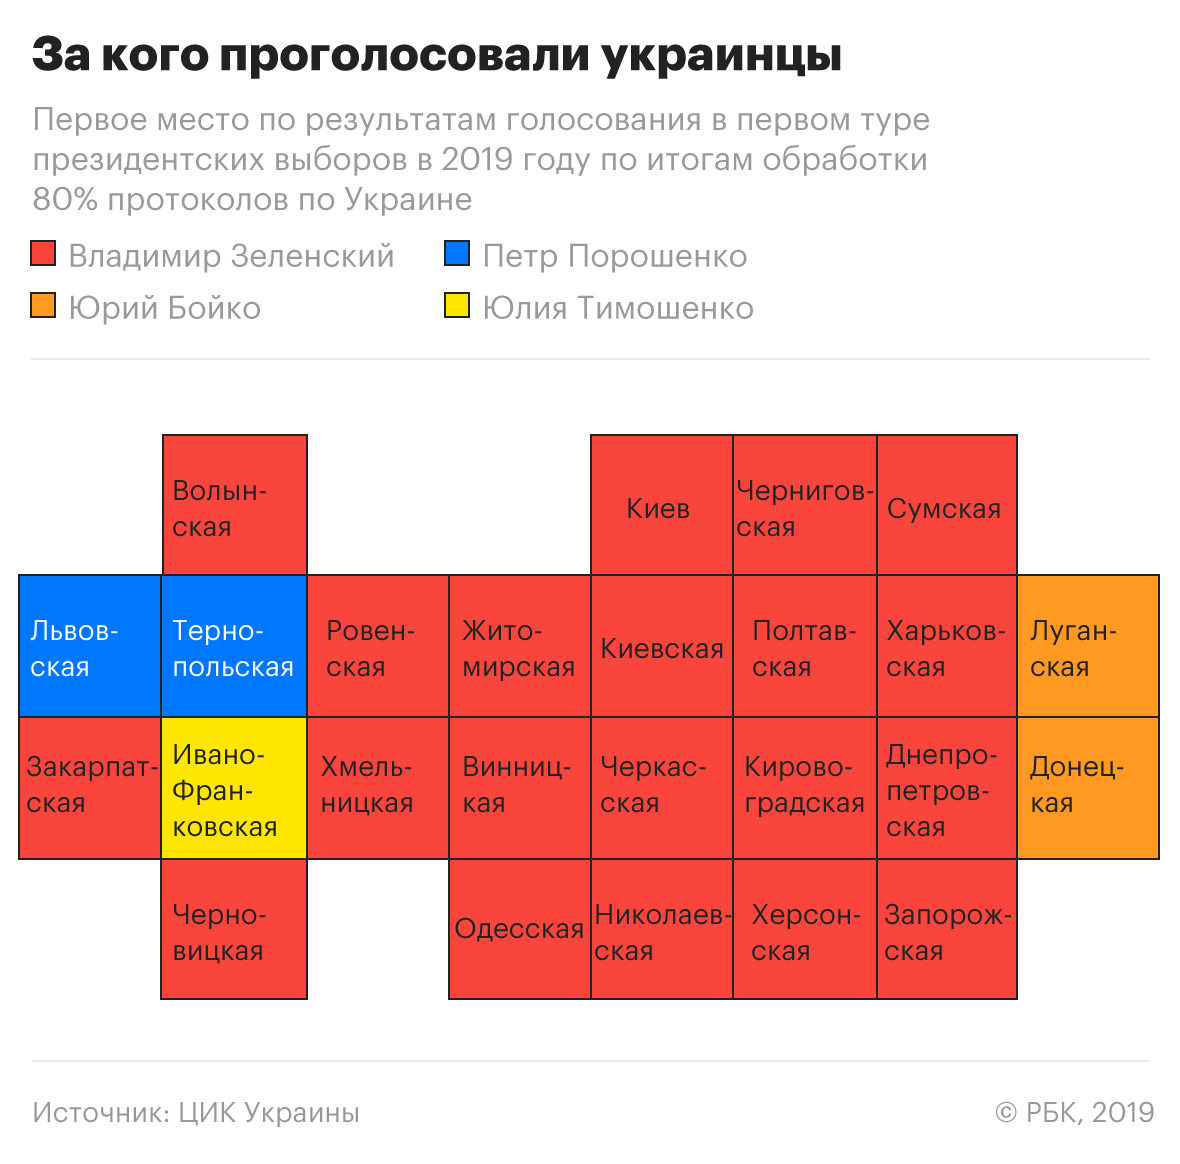 Зеленский закрепил отрыв от Порошенко после обработки 90% голосов